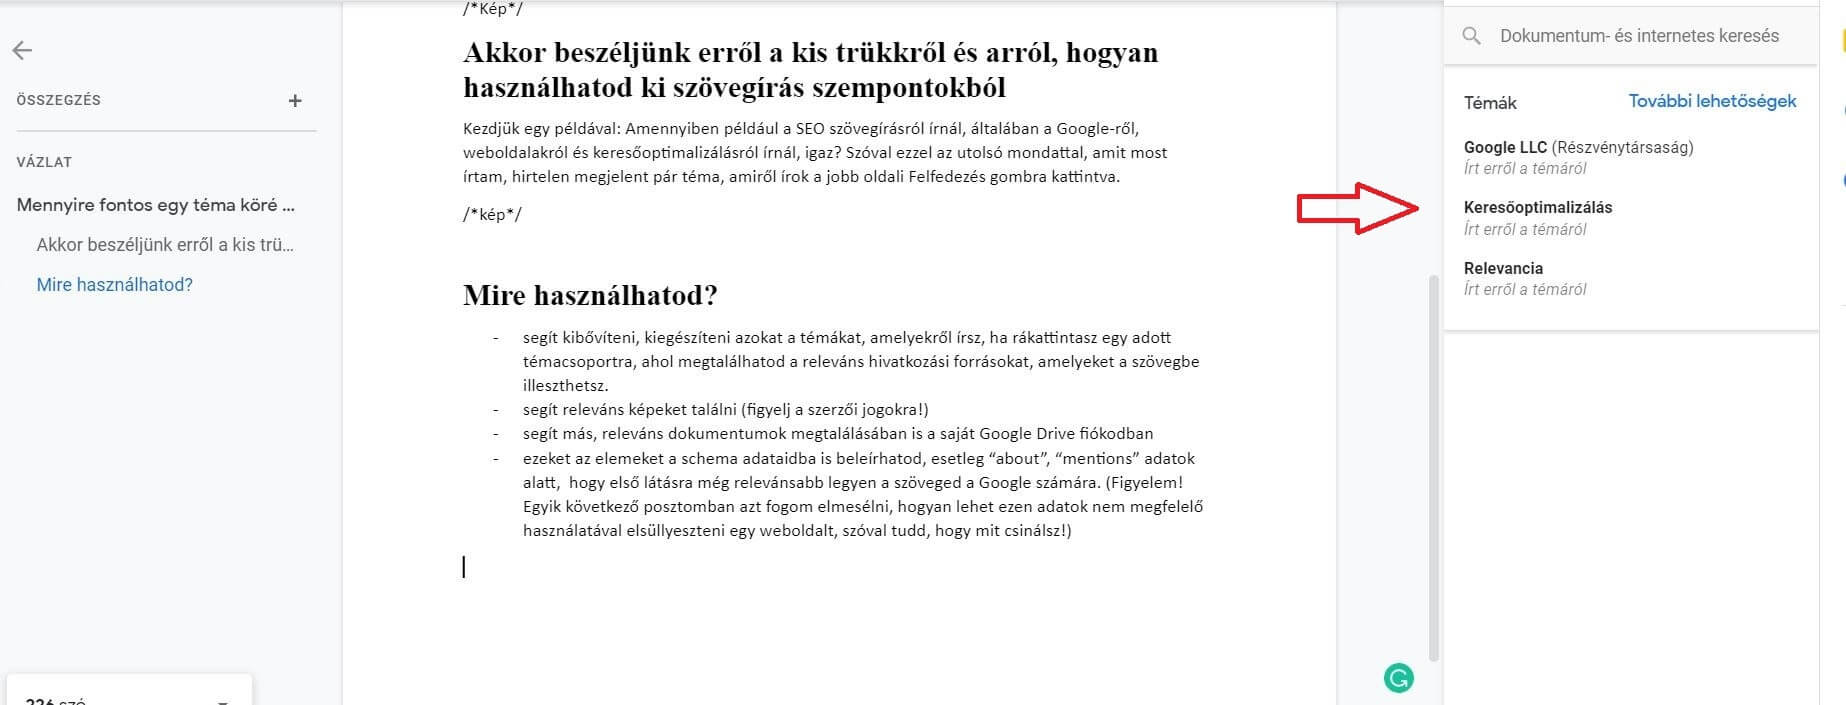 Google dokumentum 5